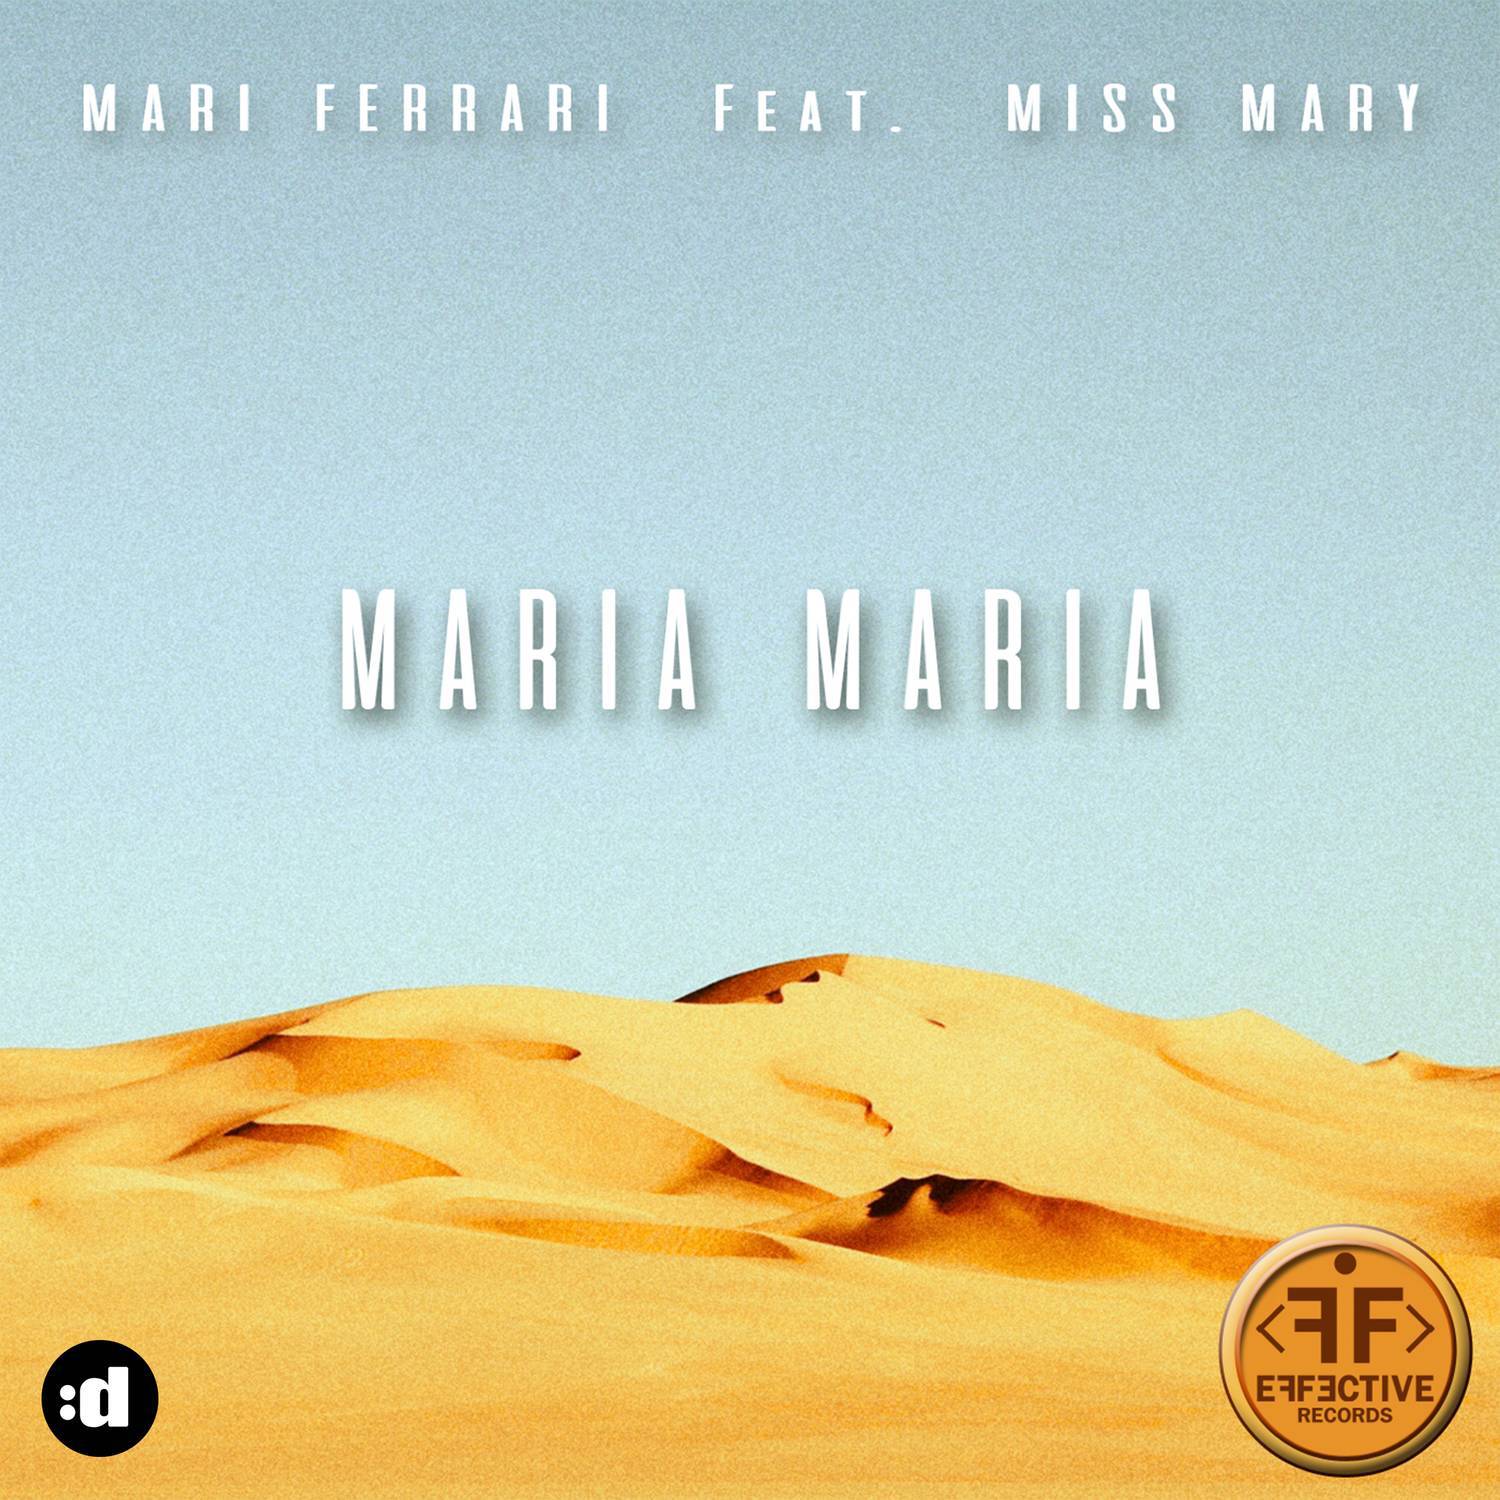 Maria maria download. Mari Ferrari Maria Maria. Miss Mary DJ. Maria Maria песня.